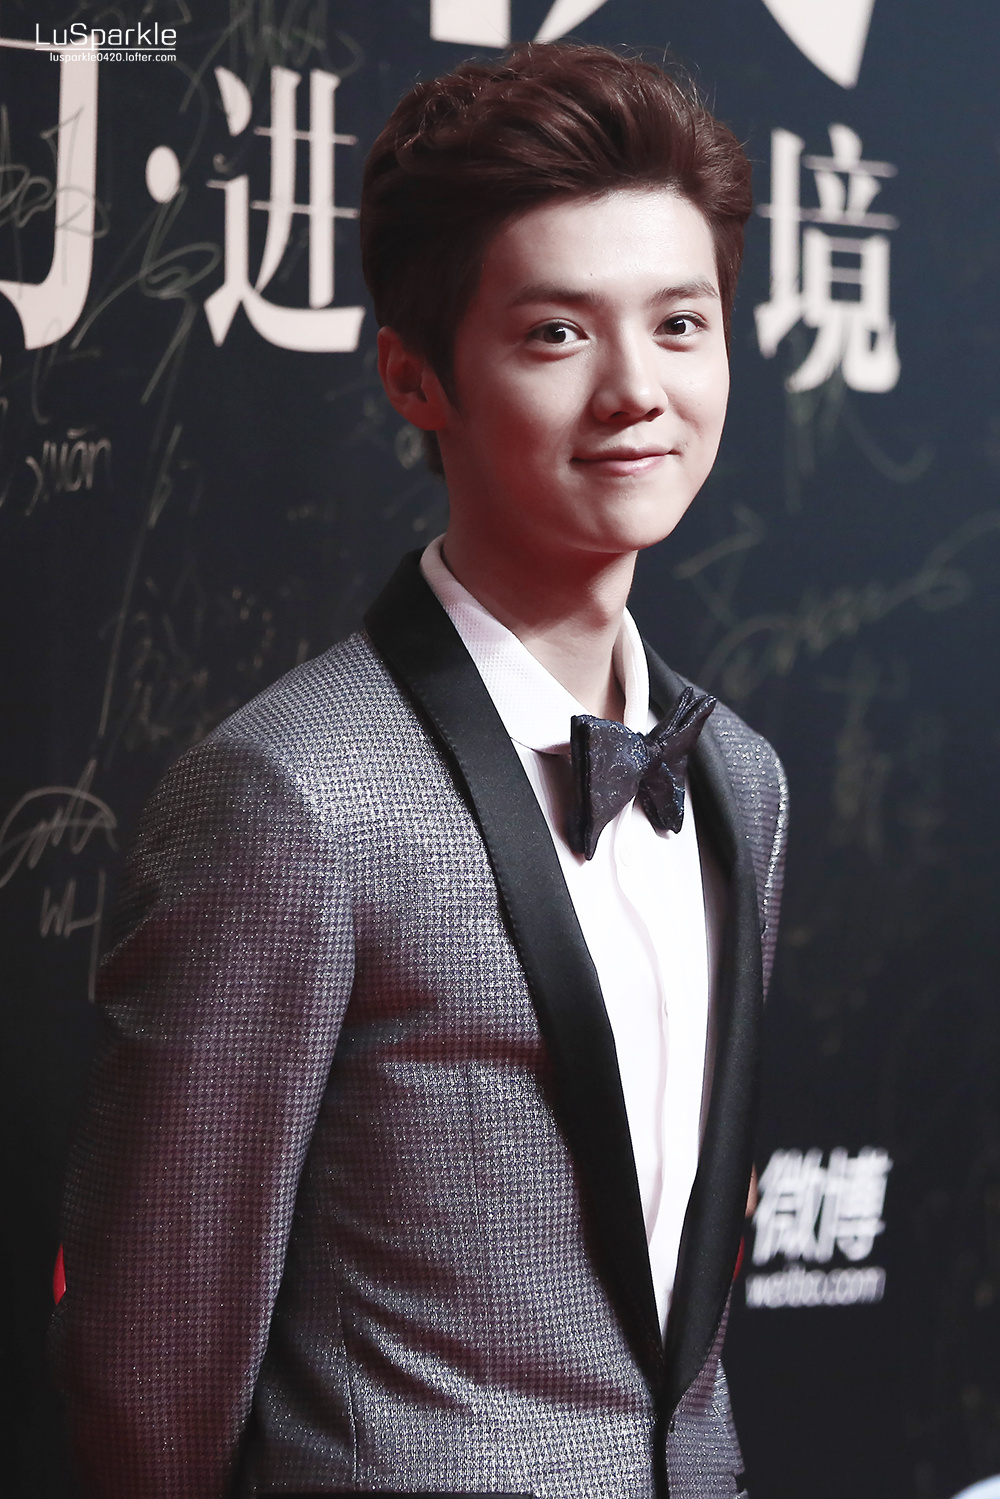 [FANTAKEN] 150115 2014 Weibo Awards Night [100P] 005OSMLnjw1eocttr58ppj30rs15nwu5